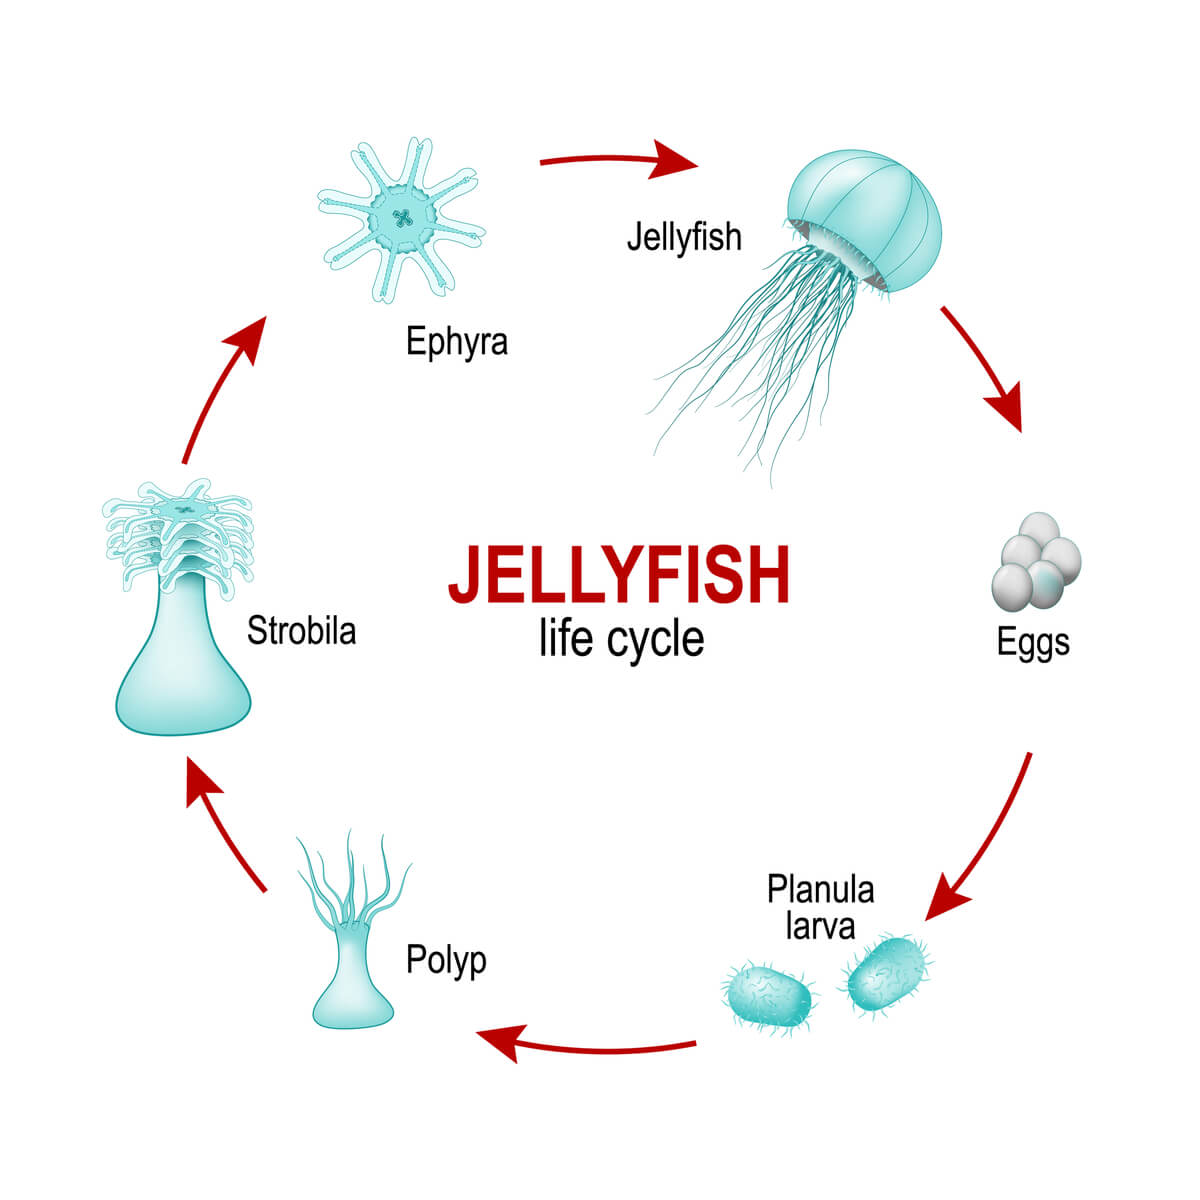 El ciclo de vida típico de las medusas.